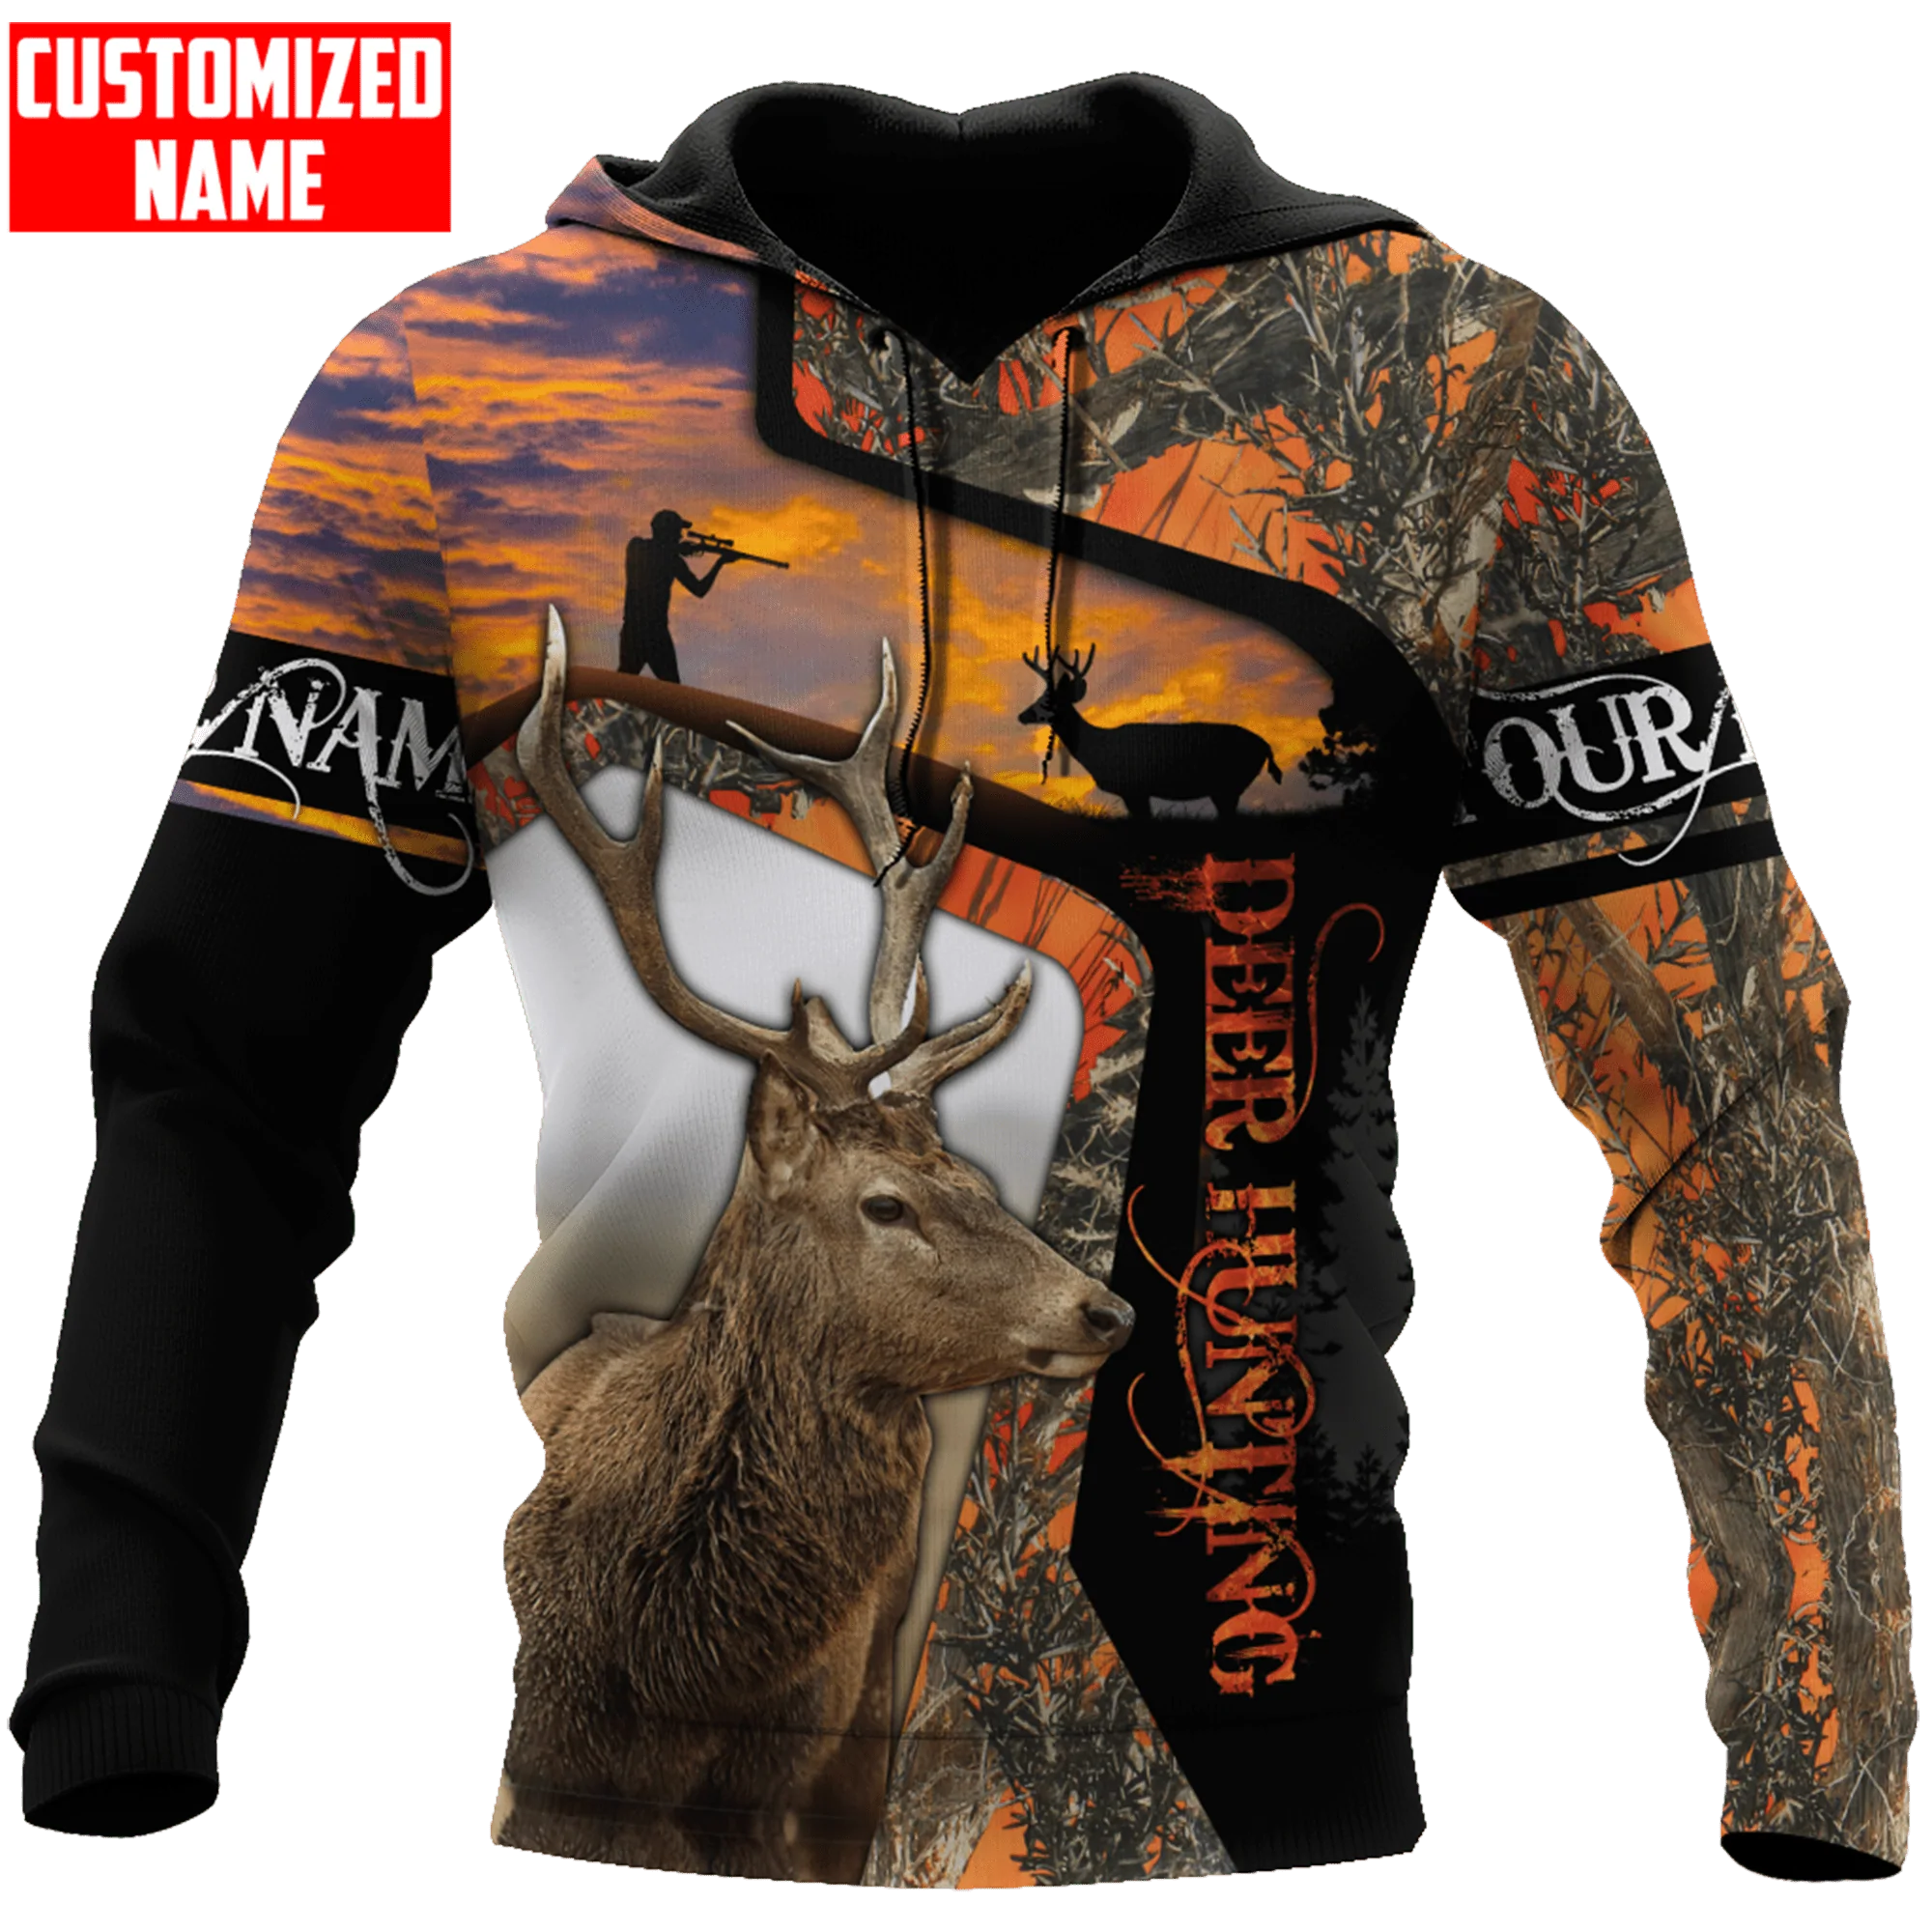 Personalized Hoodie For Hunter/ Cool Deer Hunting Hoodie/ 3D Full Print Hunting Hoodies